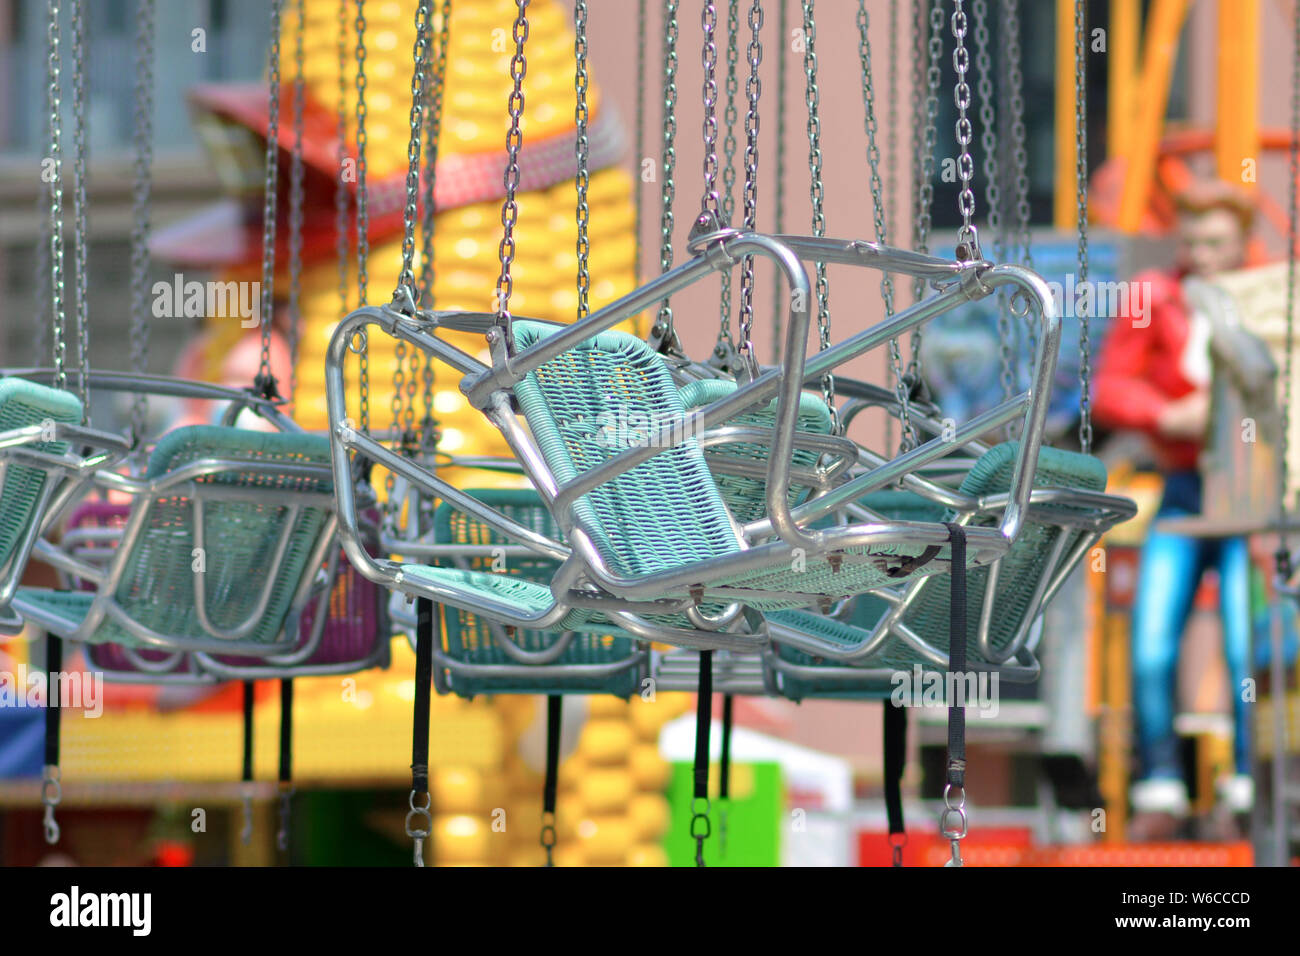 Leere Teal Blue Chairs von Stuhl Swing Fahrt am Vergnügungspark Vergnügungspark Stockfoto